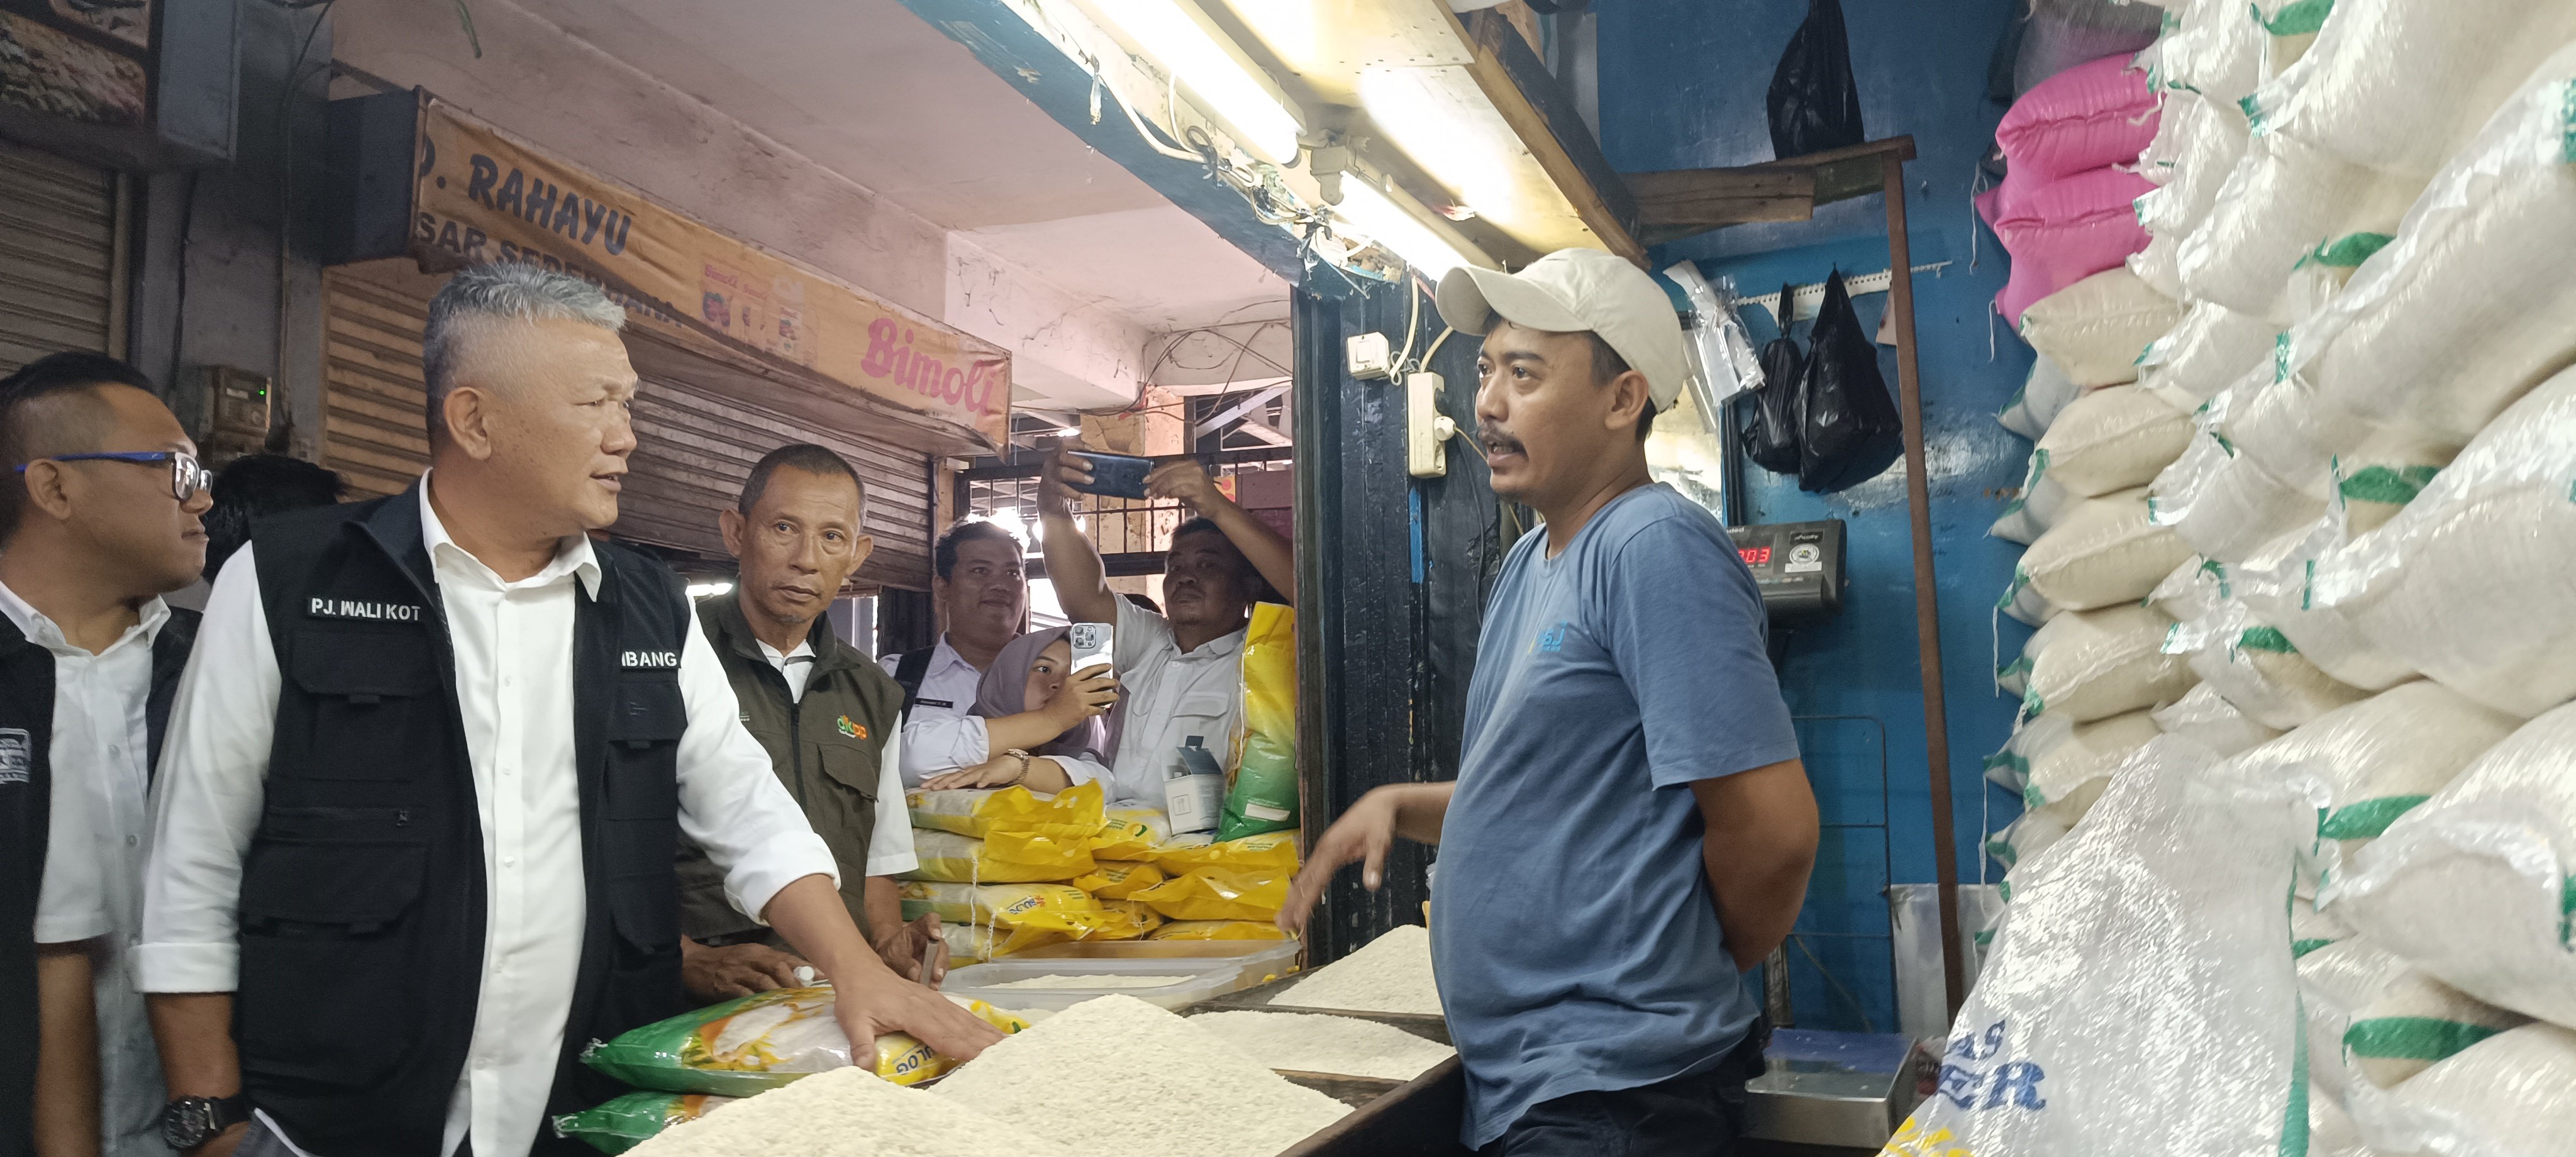 Pj walikota Bandung Bambang Tirtoyuliono beserta jajaran, lakukan pengecekan harga dan ketersediaan bahan pangan di Pasar Sederhana